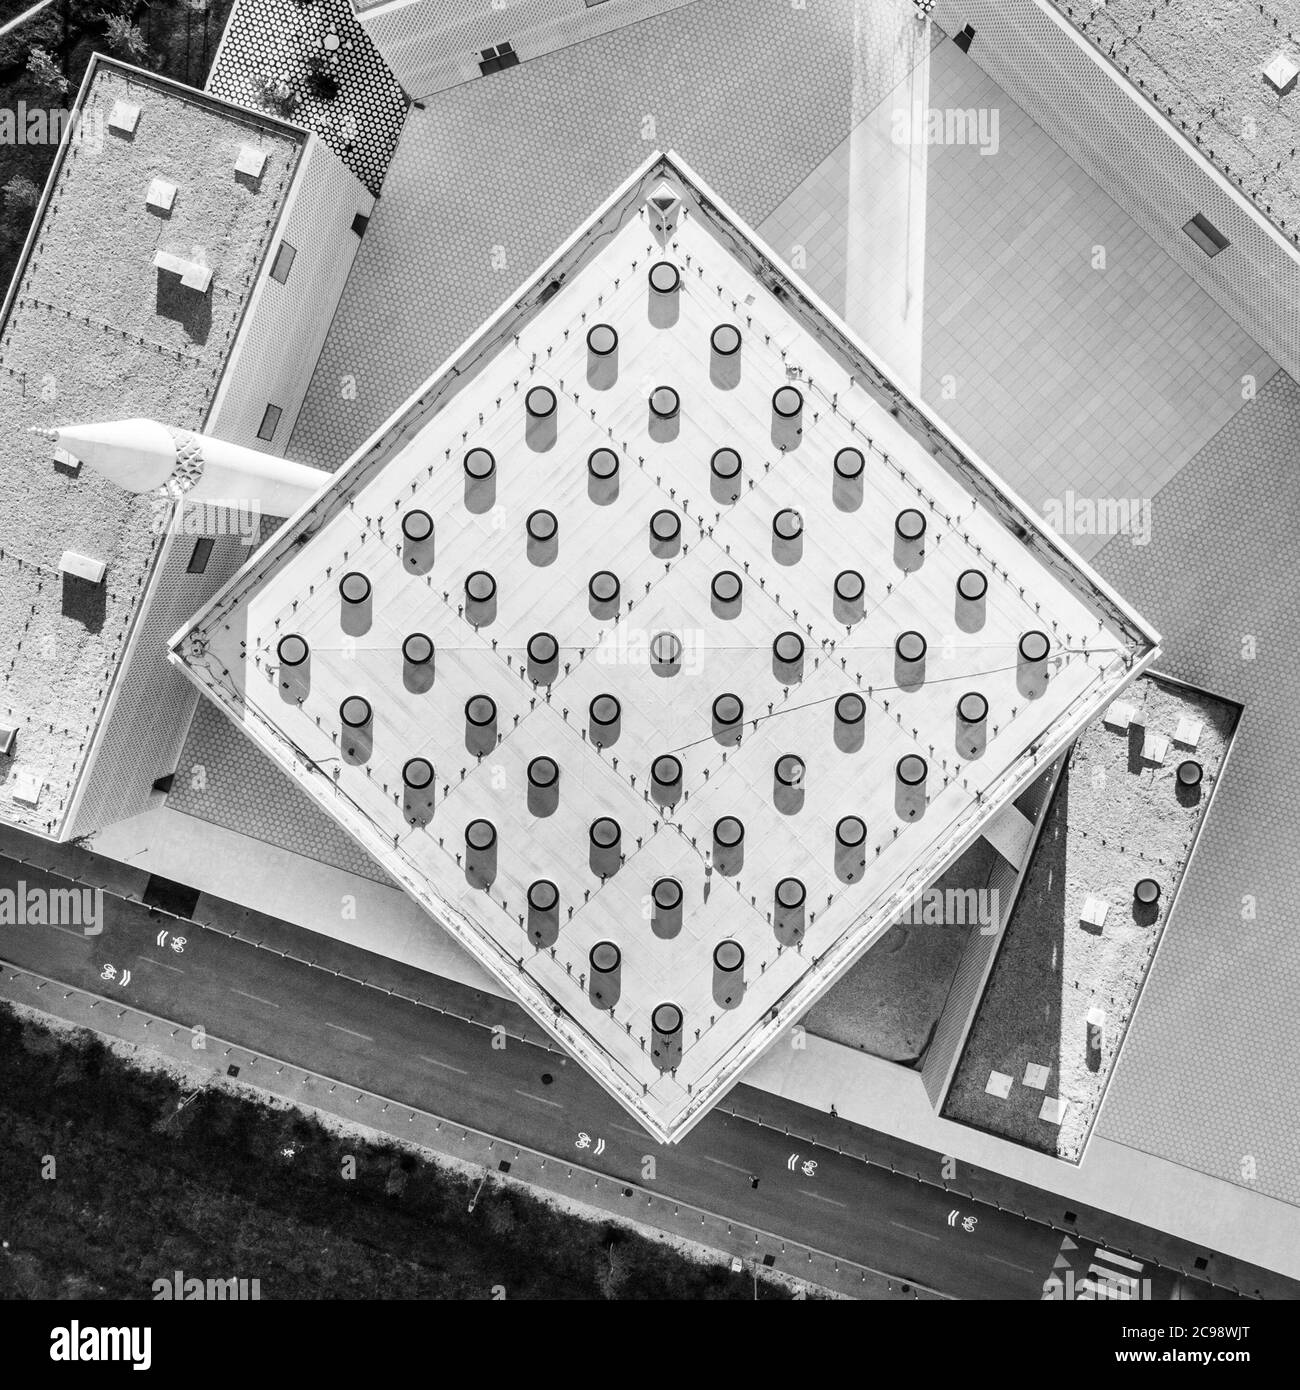 Draufsicht auf moderne Archivarchitektur des islamischen religiösen Kulturzentrums in Ljubljana, Slowenien, Europa. Schwarzweiß-Bild Stockfoto